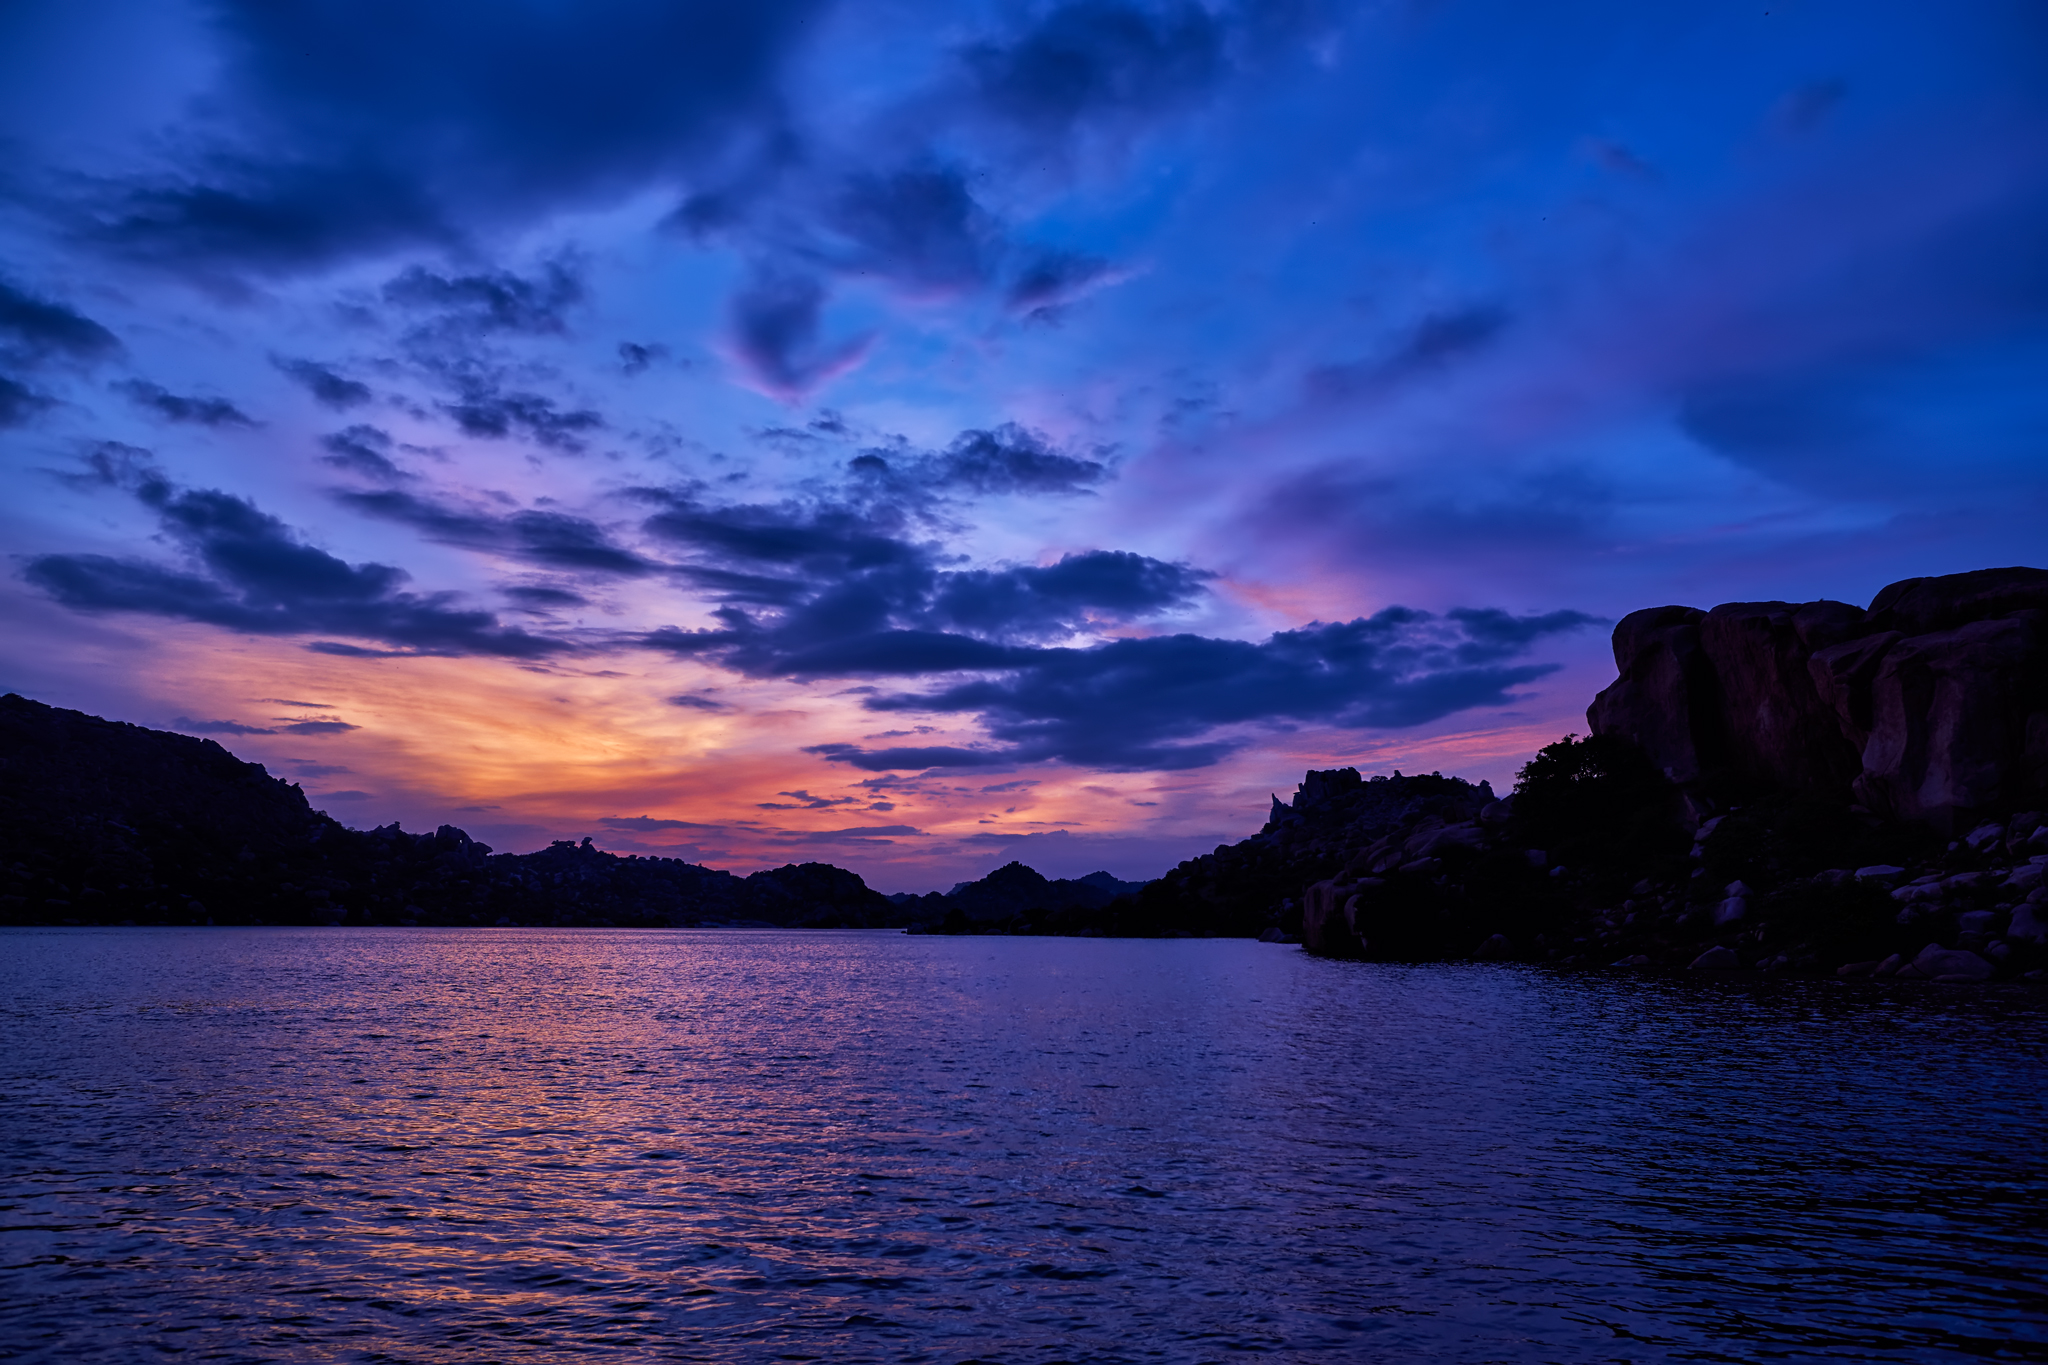 Sunset @ Sanapur Lake